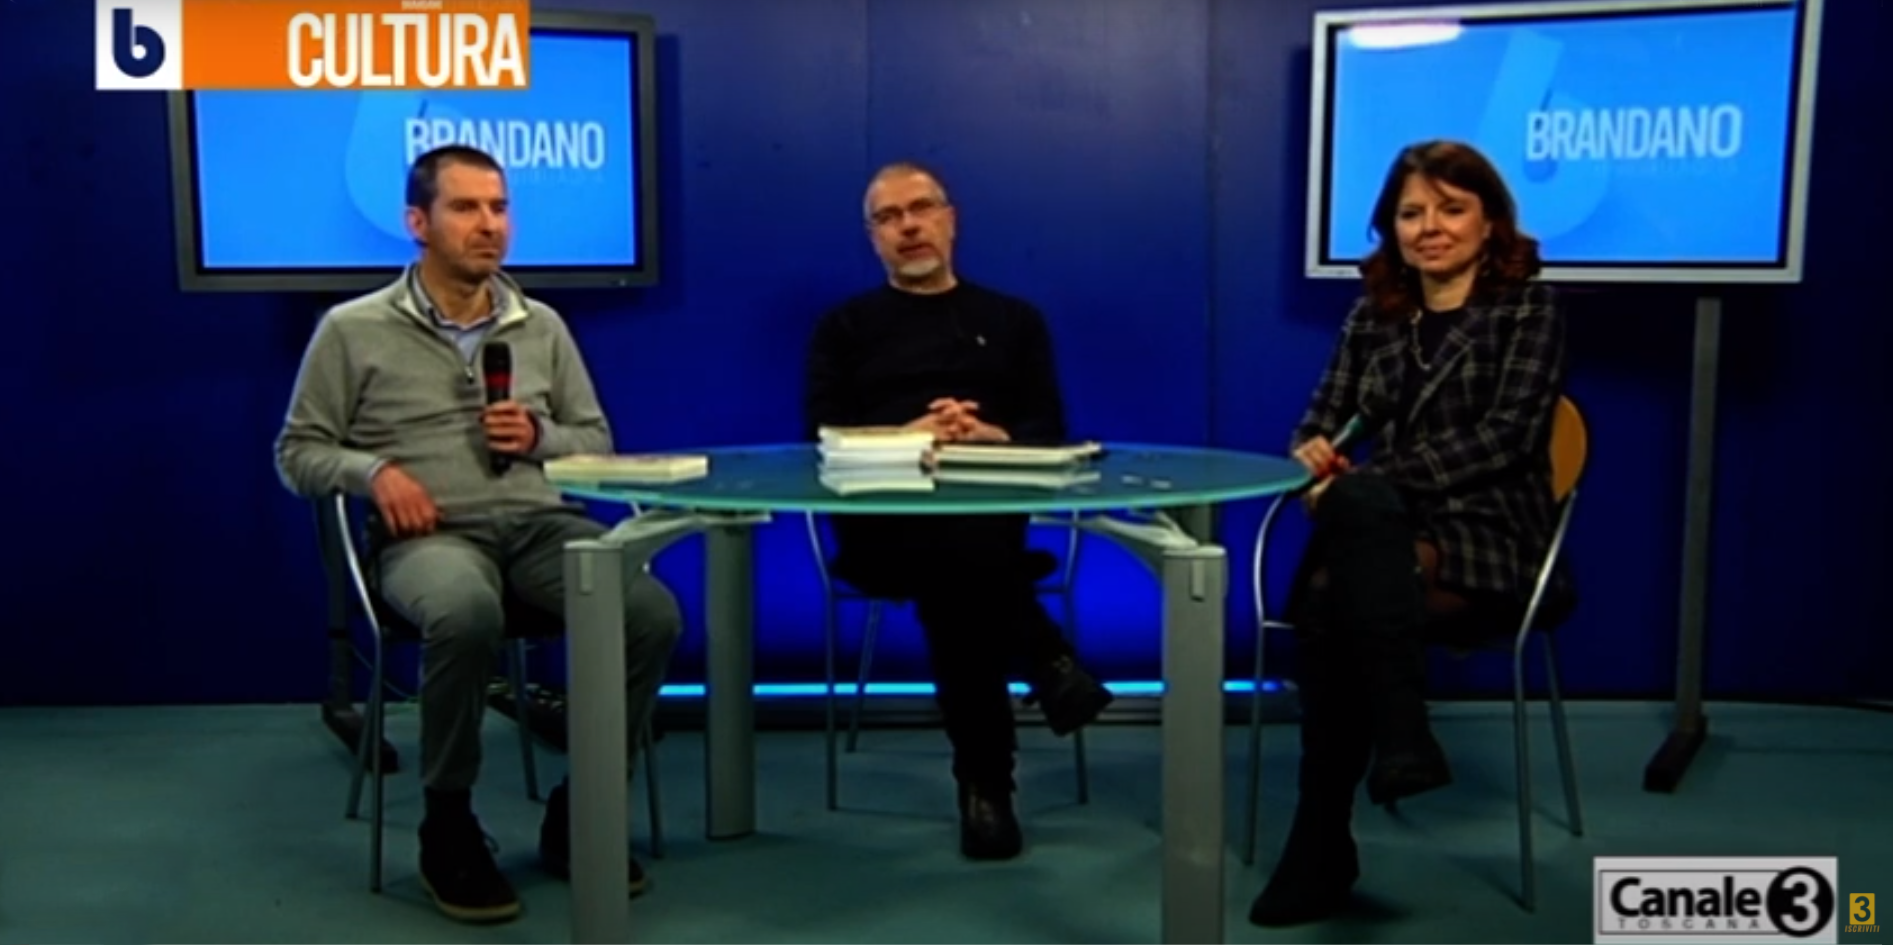 Luca Betti a dialogo con Francesco Vannoni e Francesca Tofanari su Canale 3